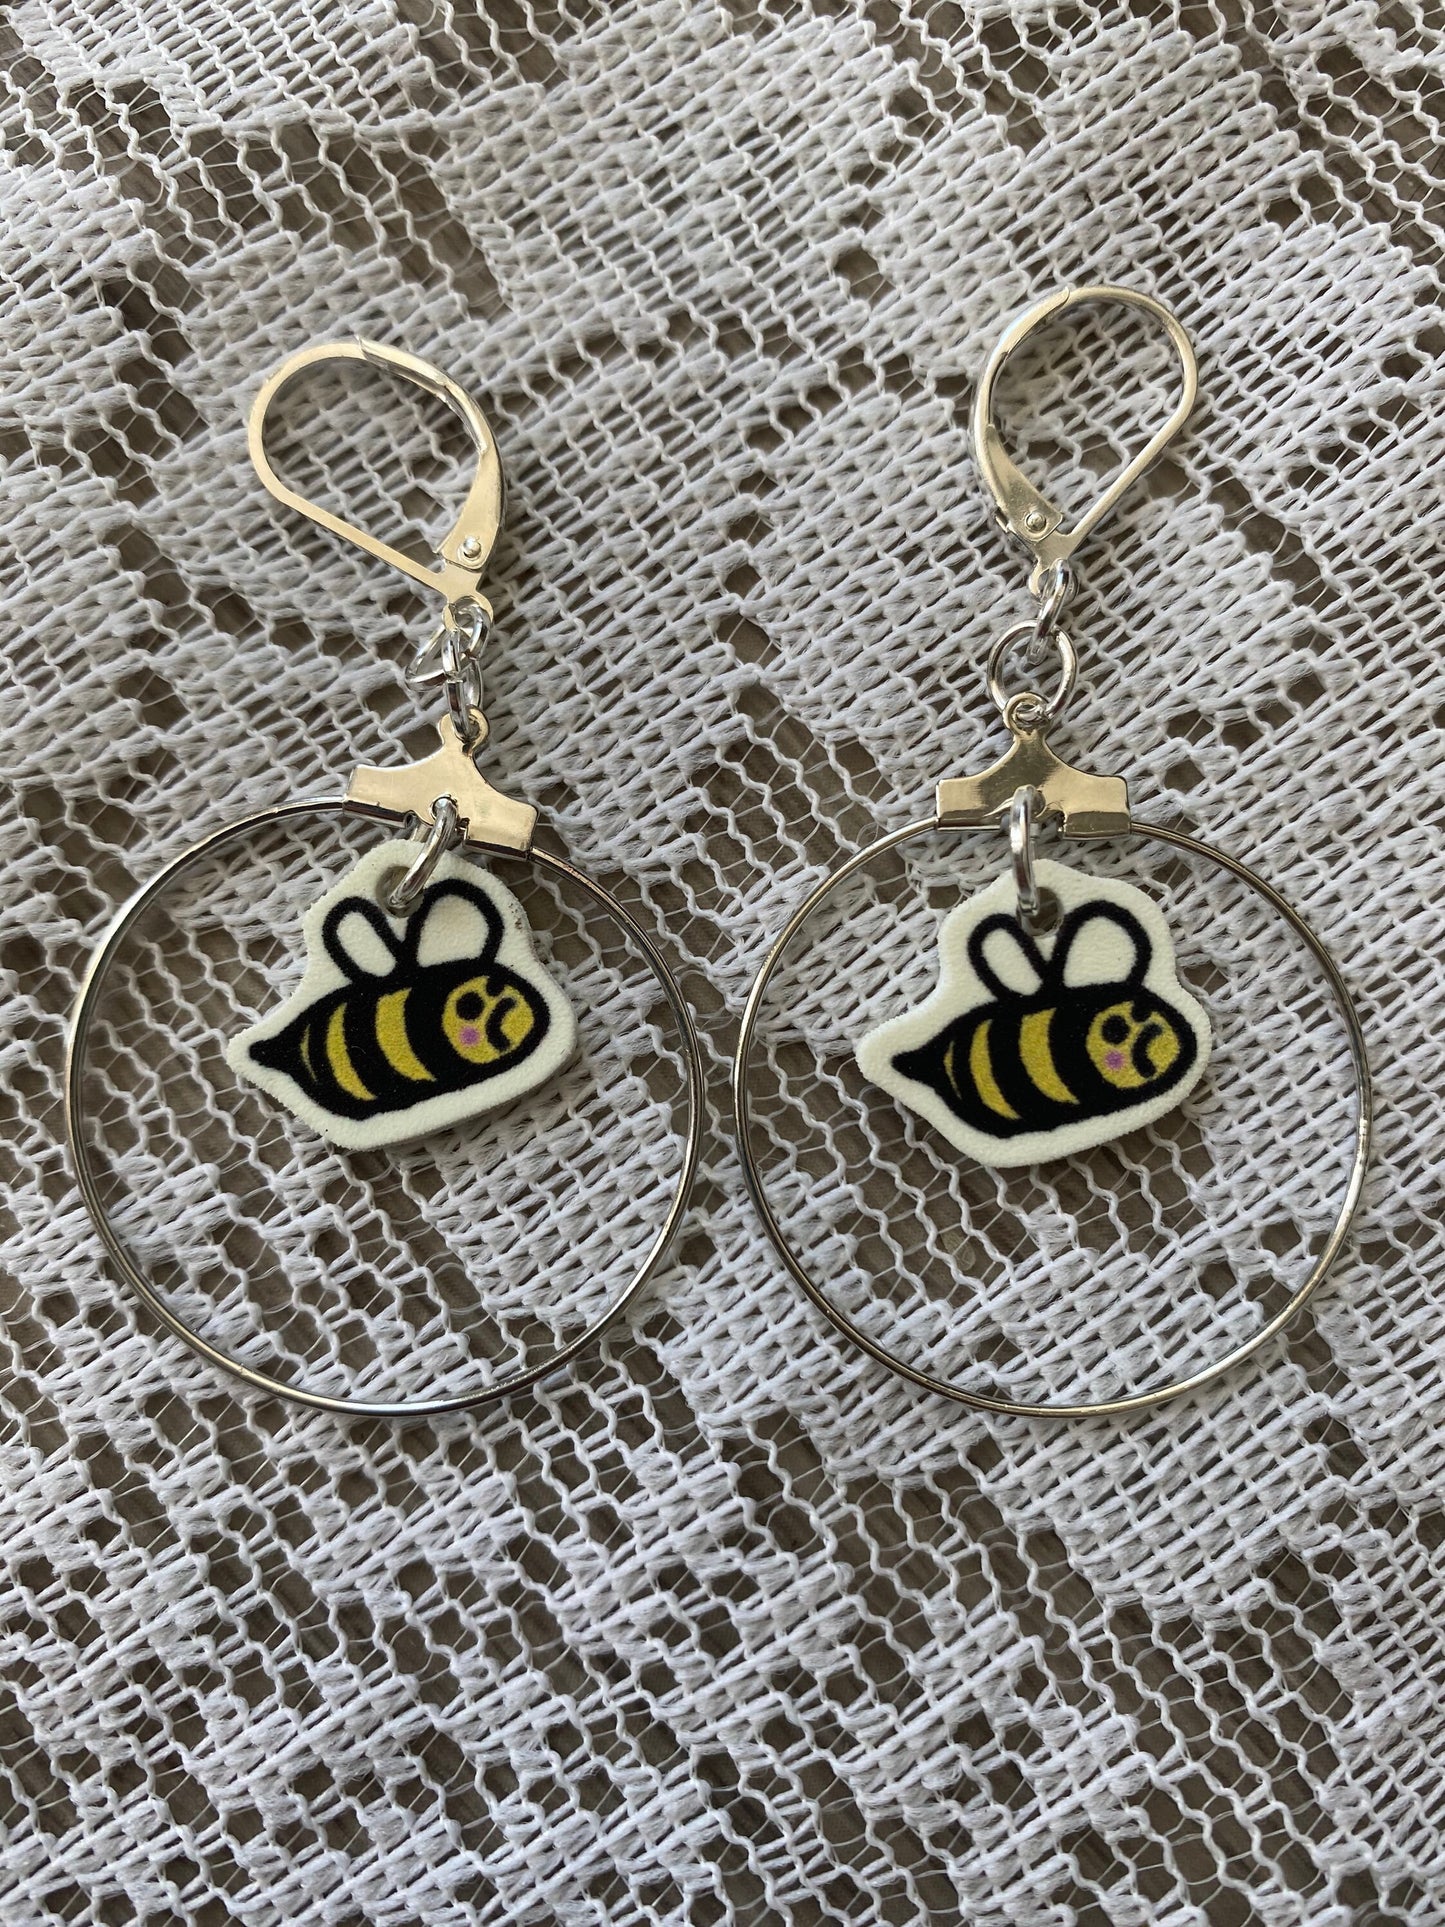 Queen bee earrings